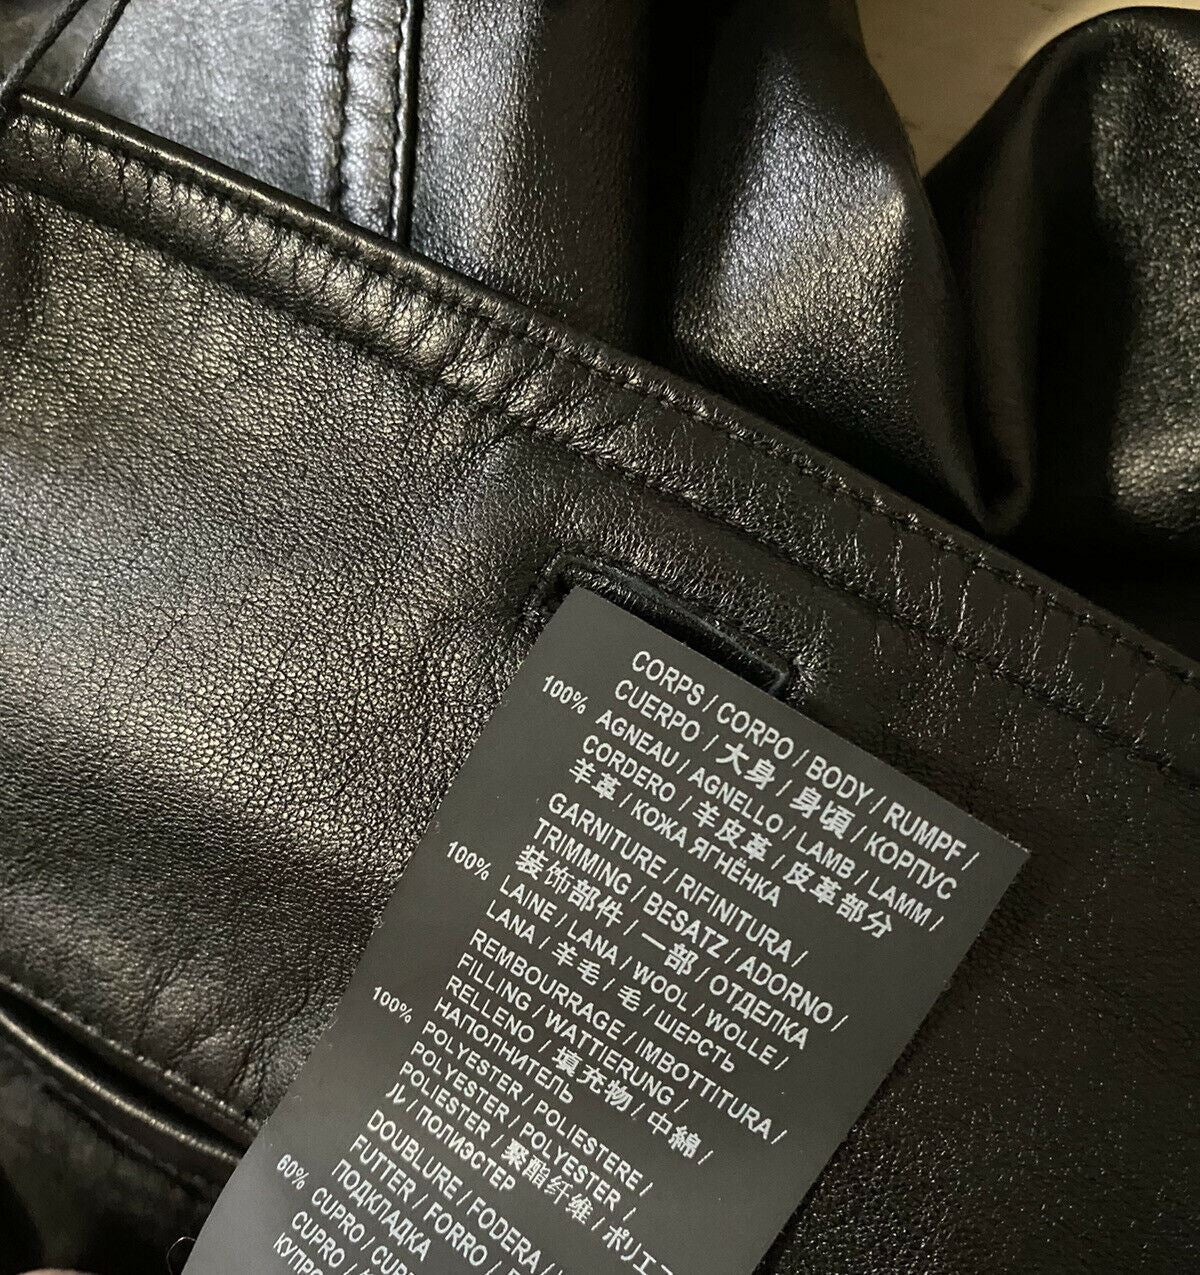 Новая мужская кожаная куртка Saint Laurent, пальто, черное, 36 США/46 ЕС, Италия, $4990